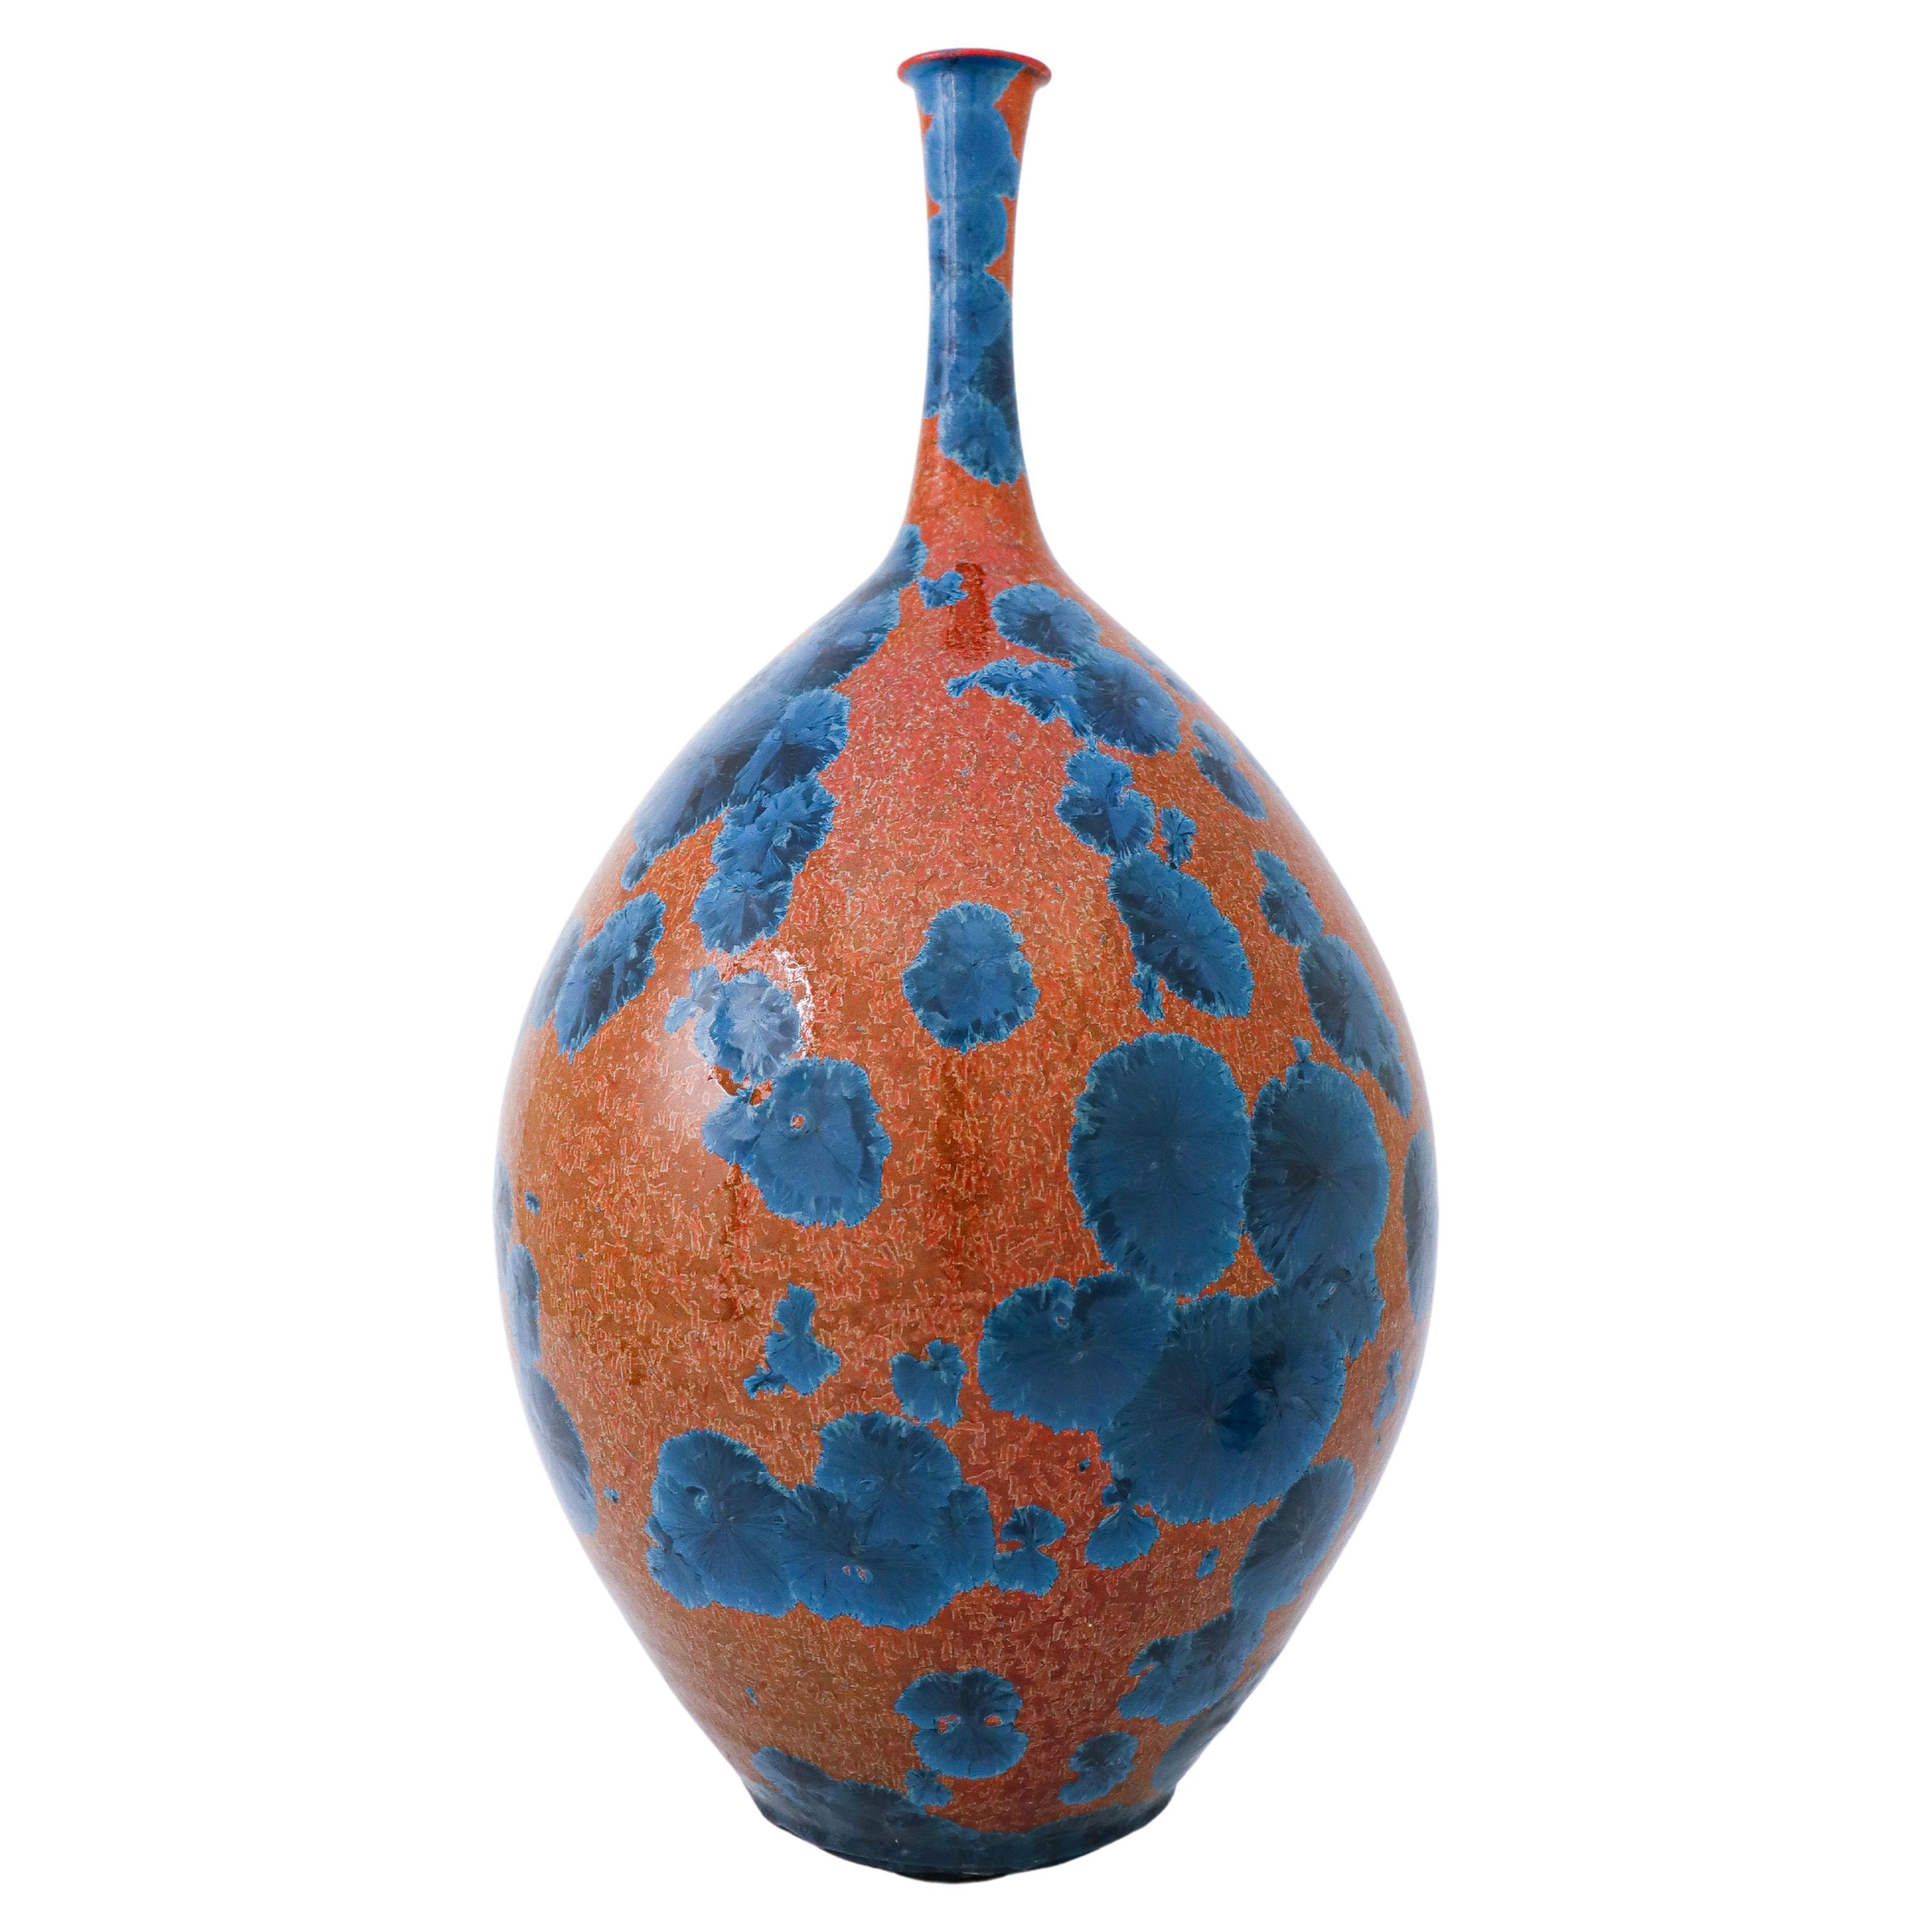 Vase en céramique contemporaine suédoise Isak Isaksson à glaçure cristalline rouge et bleue